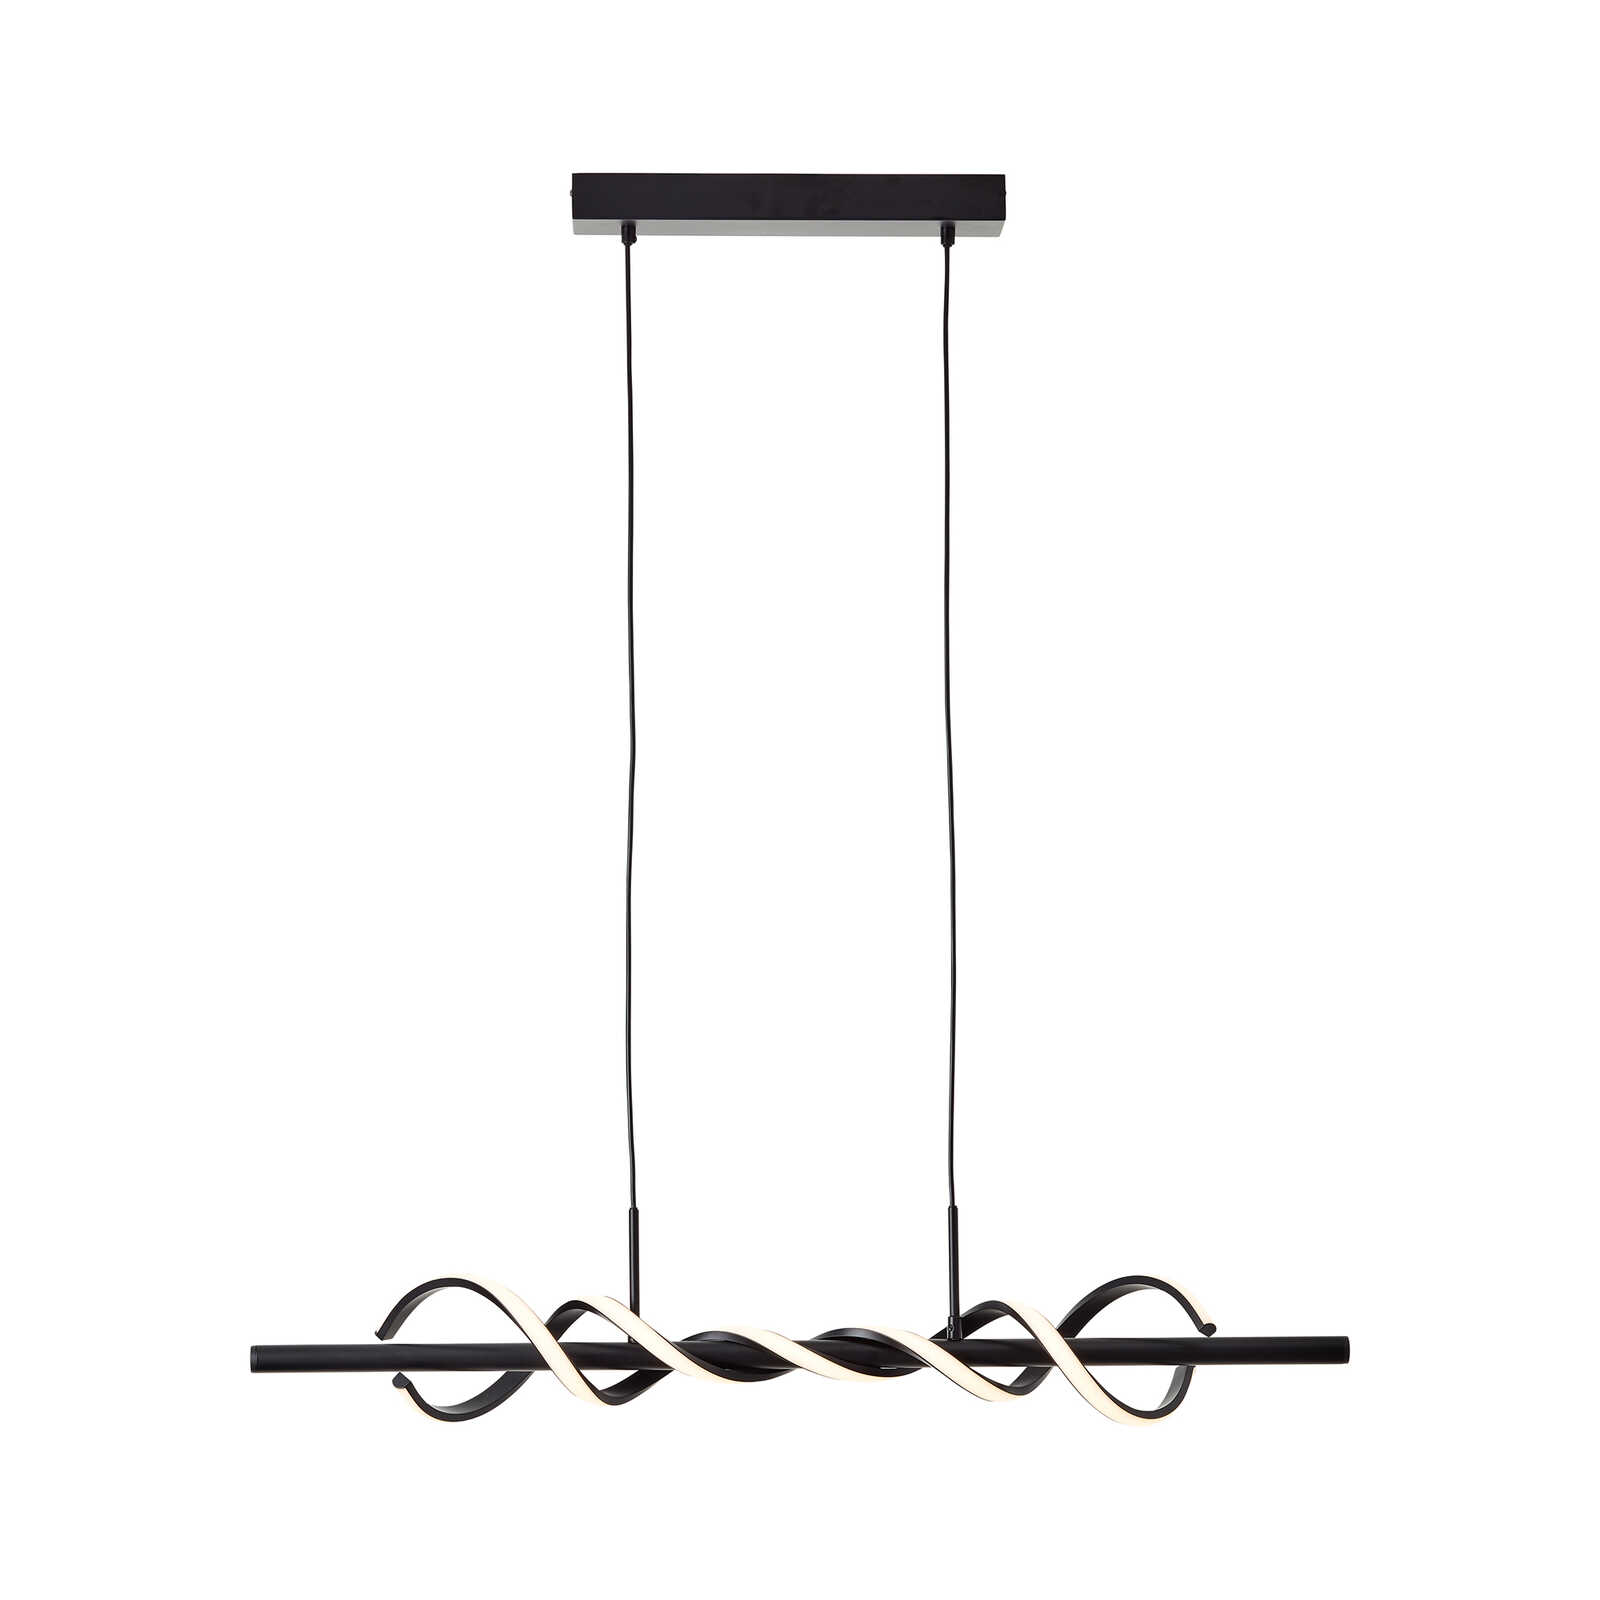 Kunststof hanglamp - Alexander 6 - Zwart
